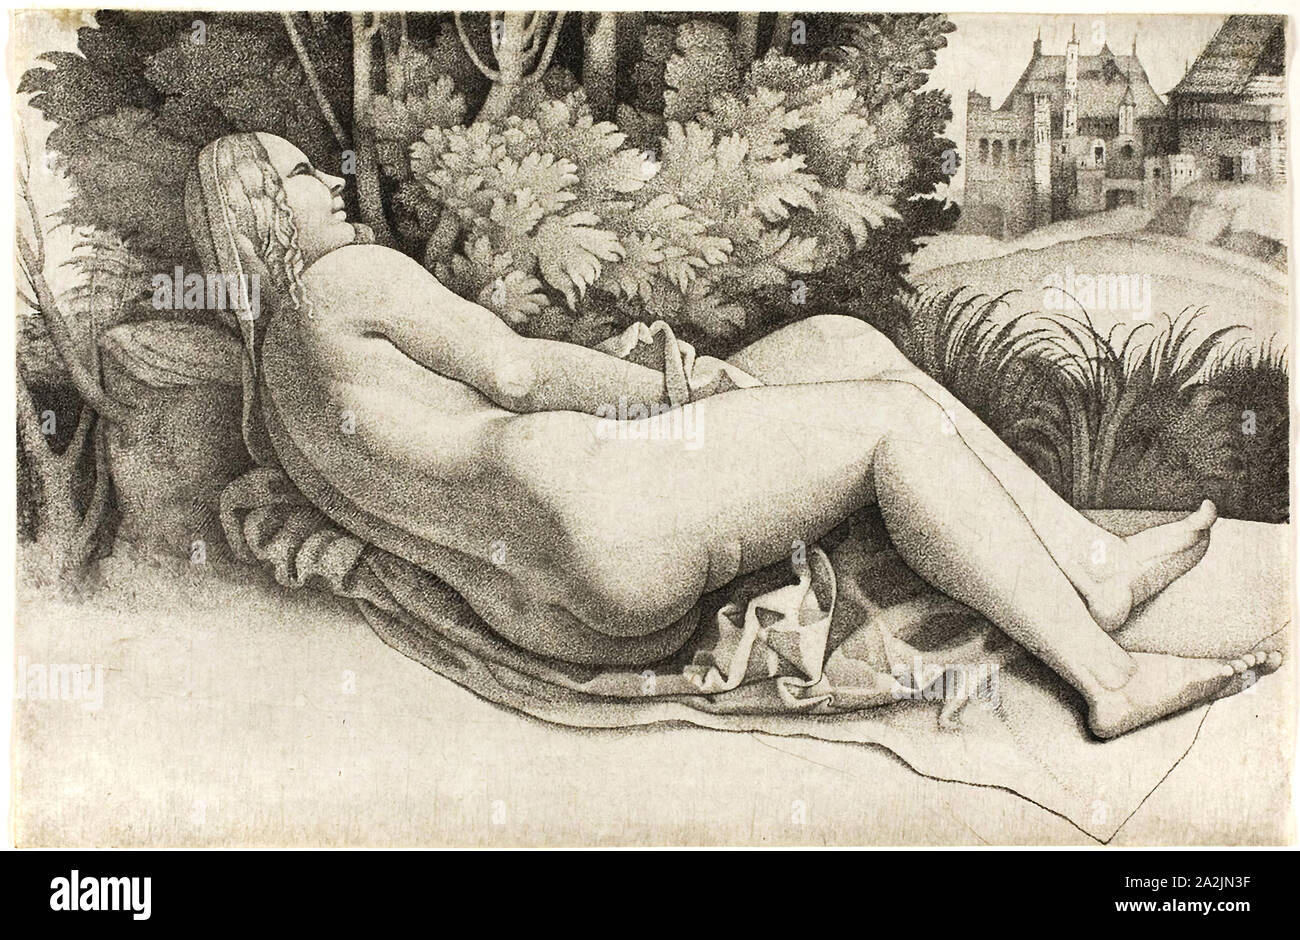 Donna reclinata in un paesaggio, 1508/09, Giulio Campagnola, Italiano, c. 1482-1515/18, l'Italia, incisioni su carta, 119 x 182 mm (foglio Foto Stock